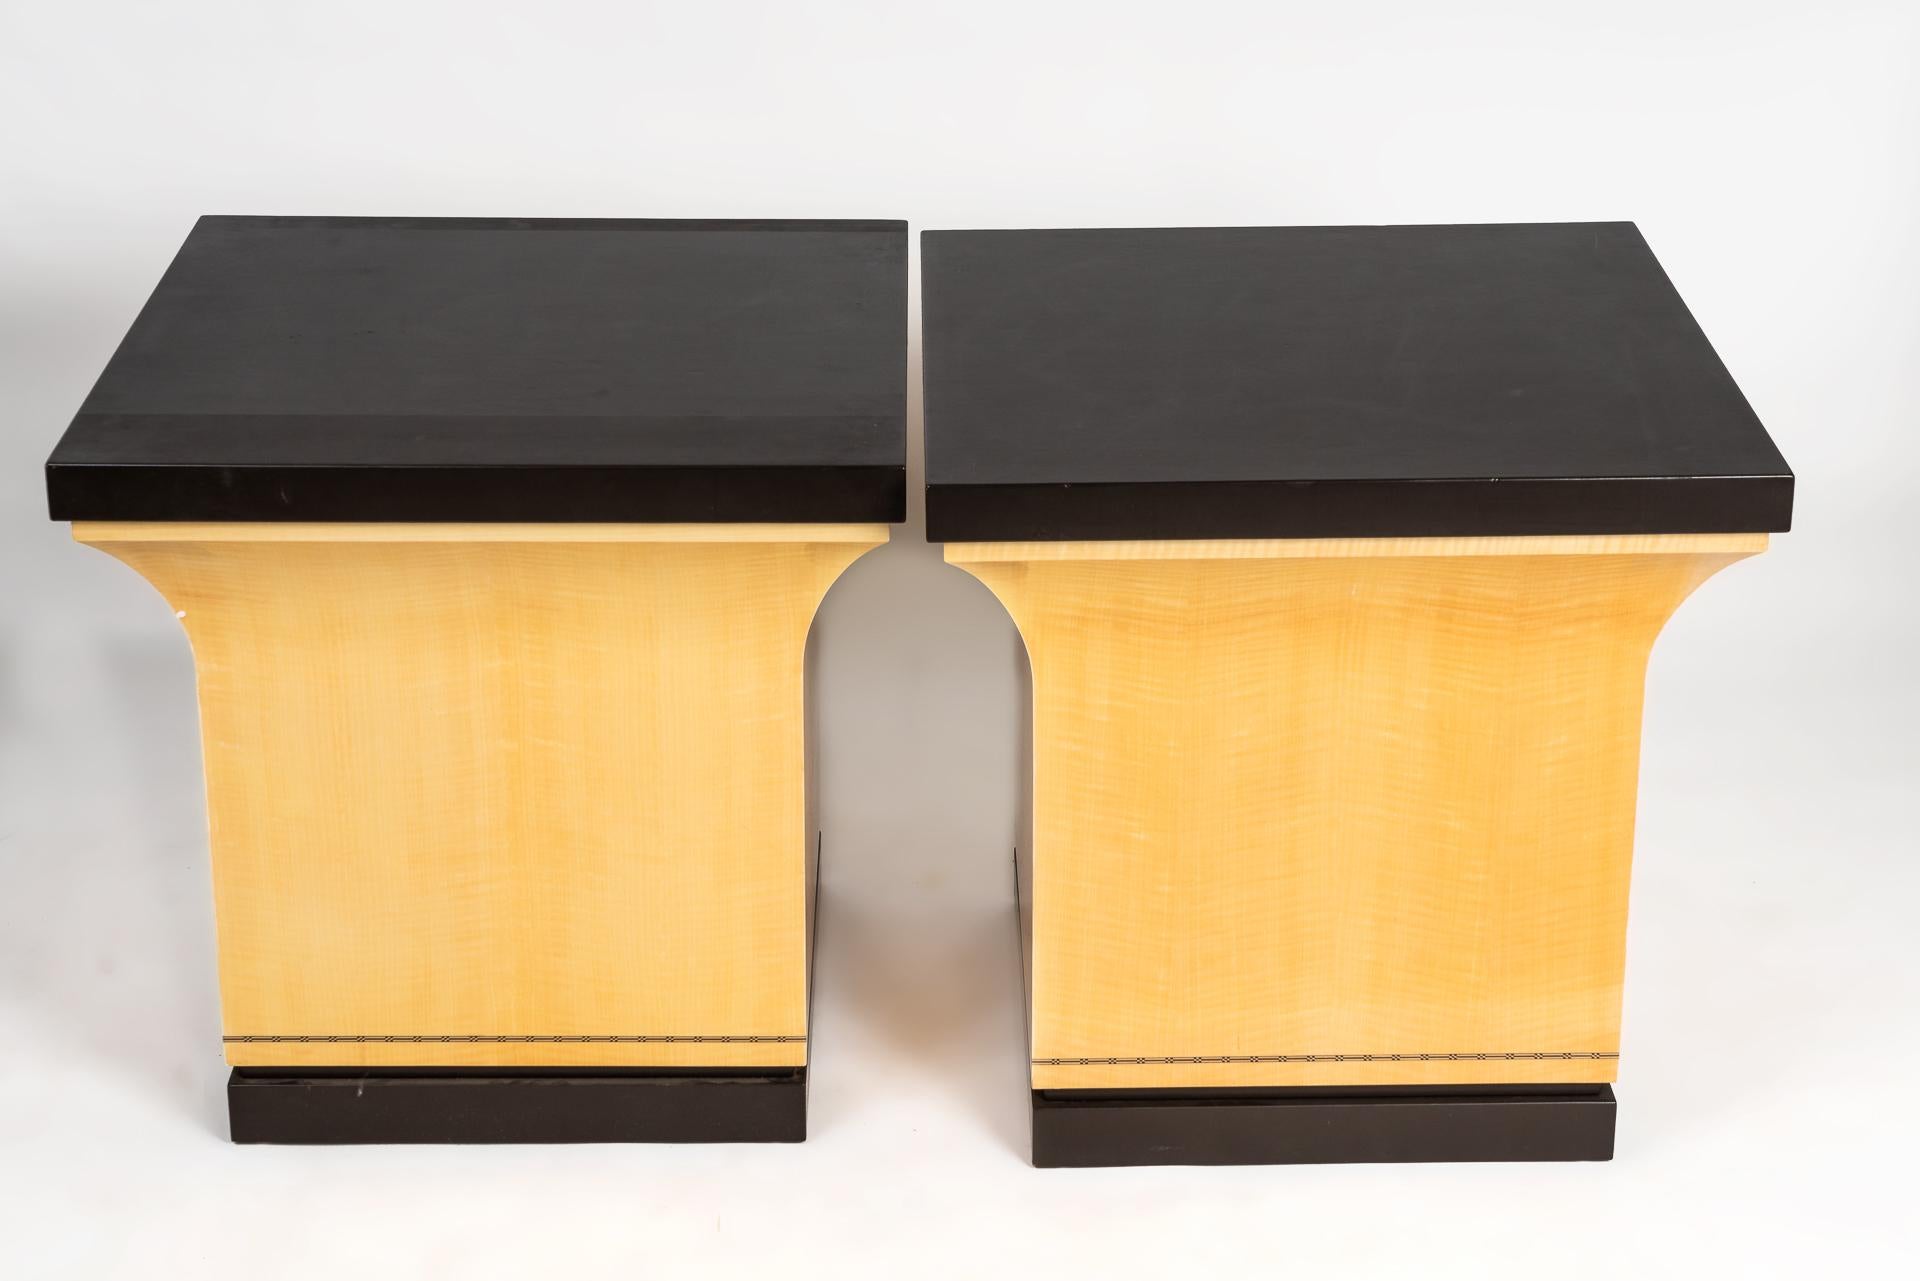 Diese zwei schönen, handgefertigten Sockel, die von Karl Spinger Ltd. hergestellt wurden, haben ein Anigre-Holzfurnier und der Sockel und die Platte sind mit dunklem Leder bezogen. Im unteren Teil des Sockels befindet sich eine detaillierte